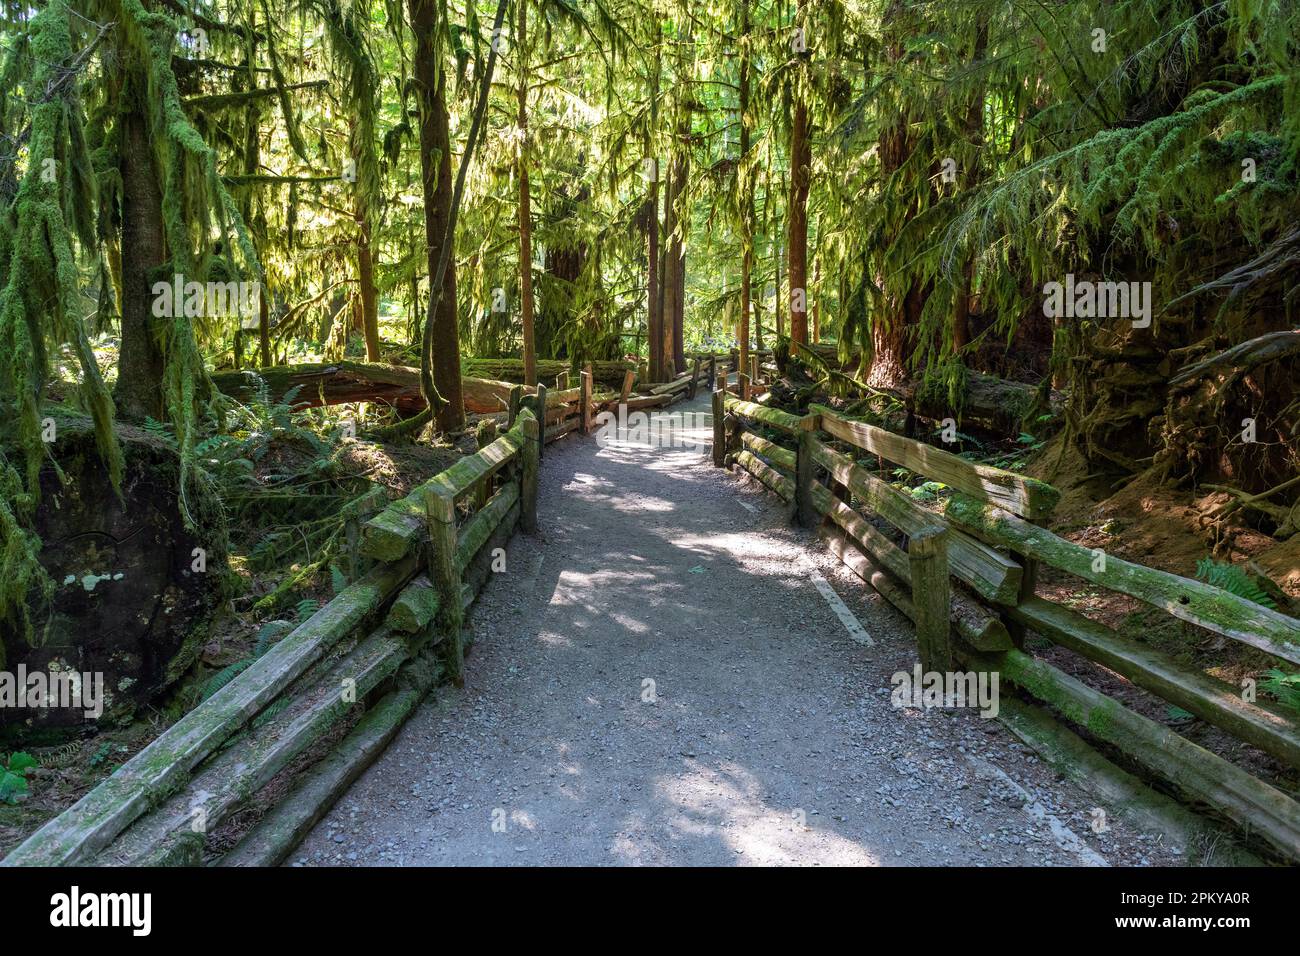 Sentier de randonnée dans Cathedral Grove avec des cèdres de l'Ouest et du Douglas taxifolié, parc provincial Macmillan, île de Vancouver, Canada. Banque D'Images